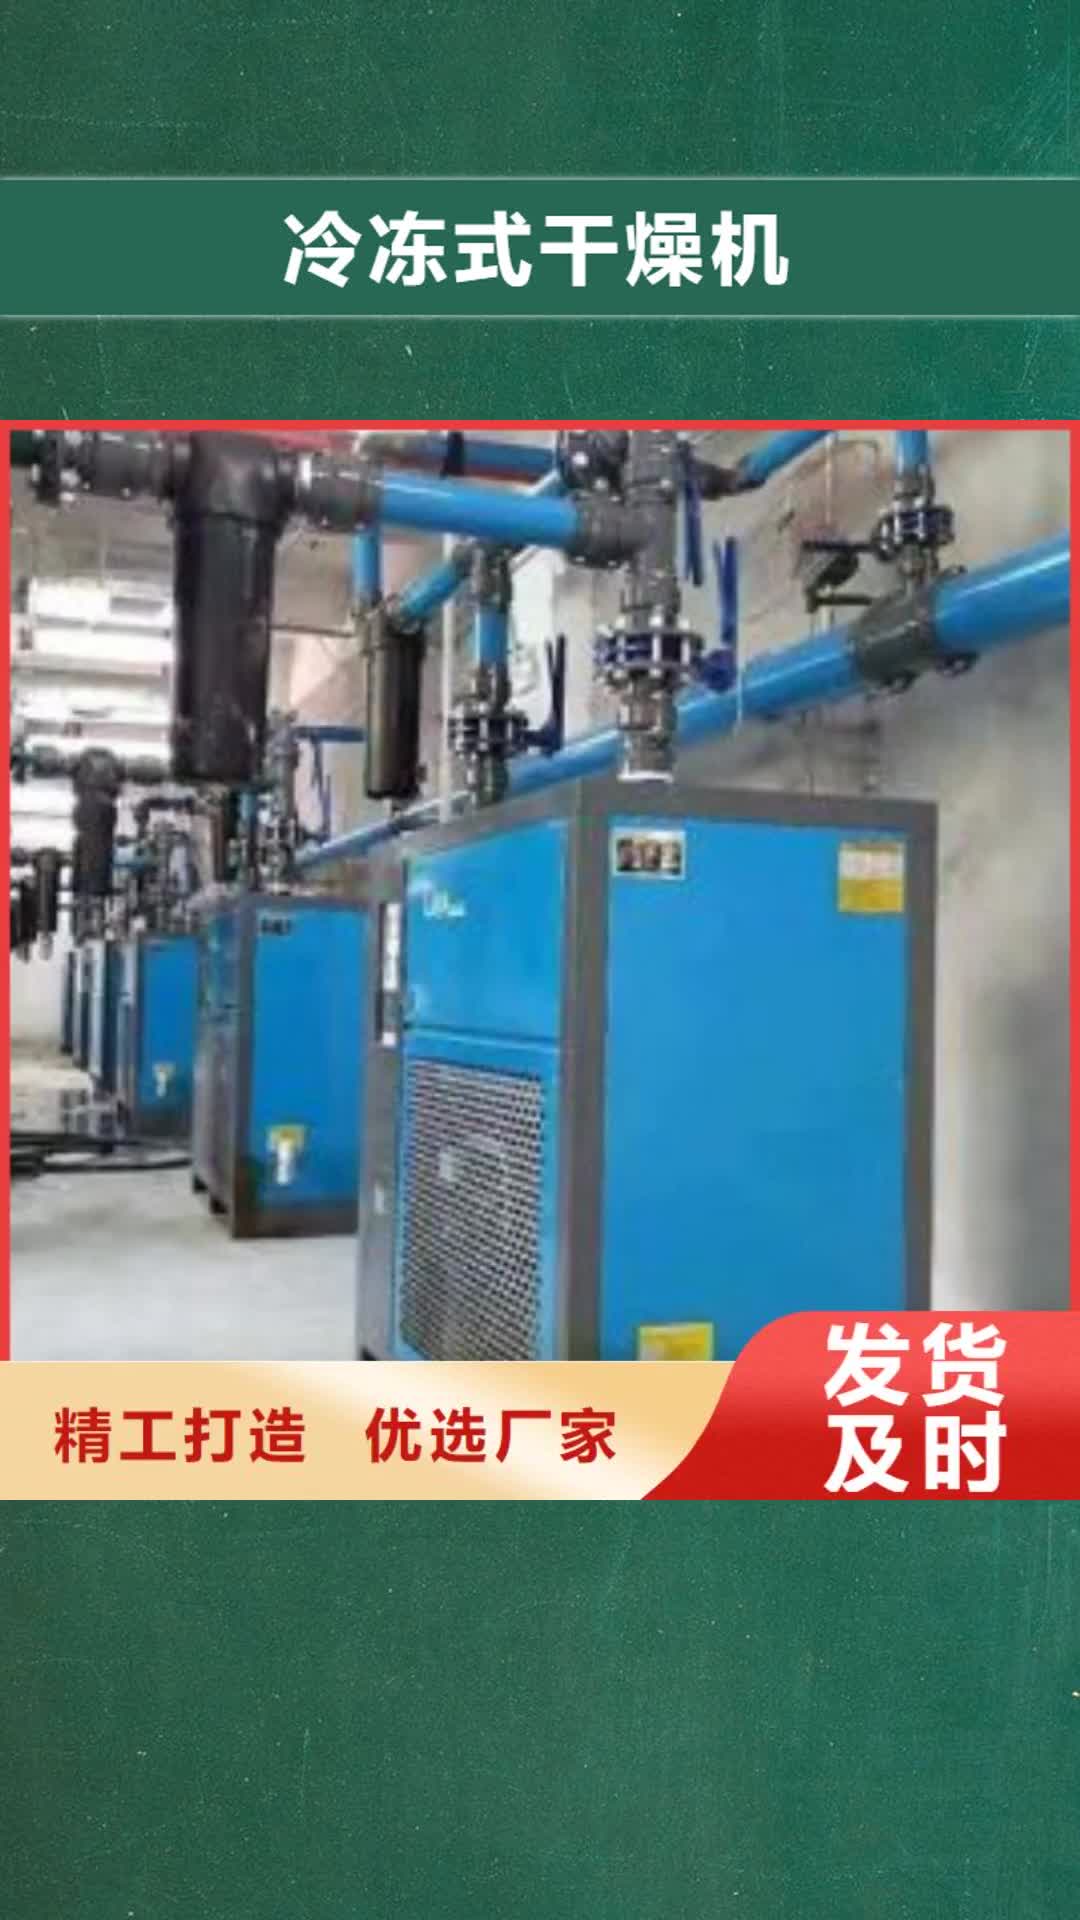 上海 冷冻式干燥机采购无忧